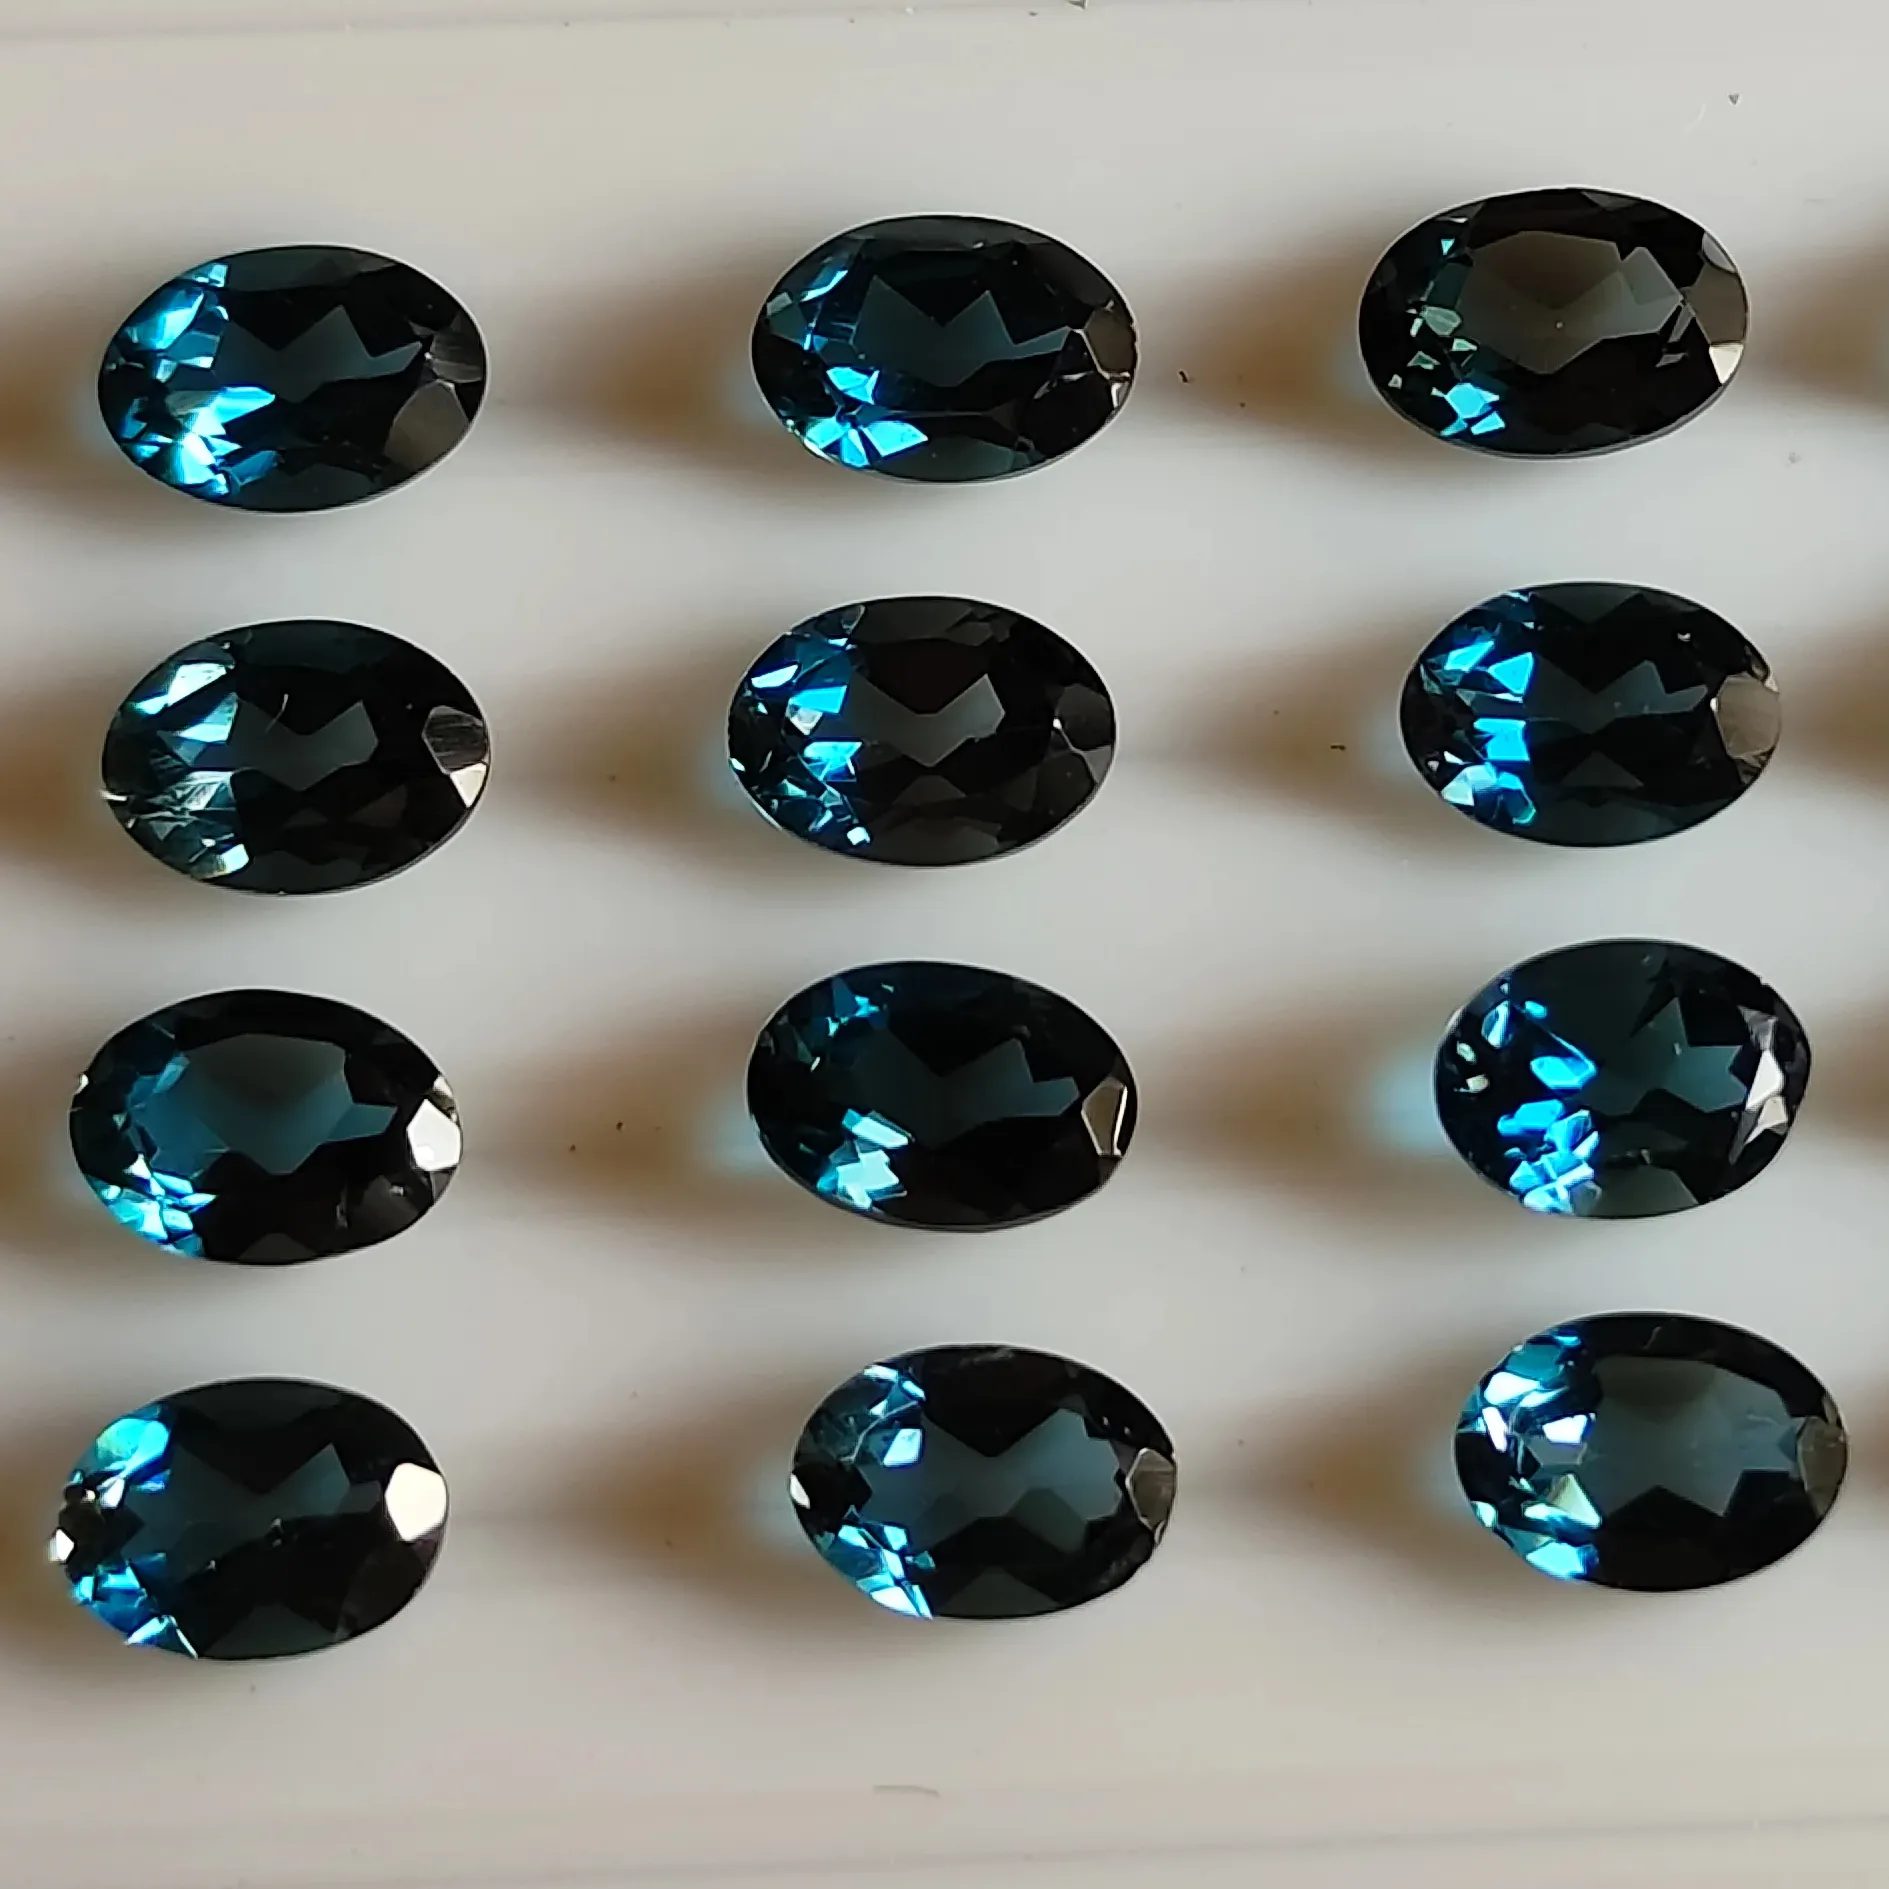 التوباز الأزرق الطبيعي لندن، 100% أصلي، بيضاوي 3X5 مم، قطع فضفاضة، شبه كريمة، أحجار التوباز الأزرق، مجوهرات